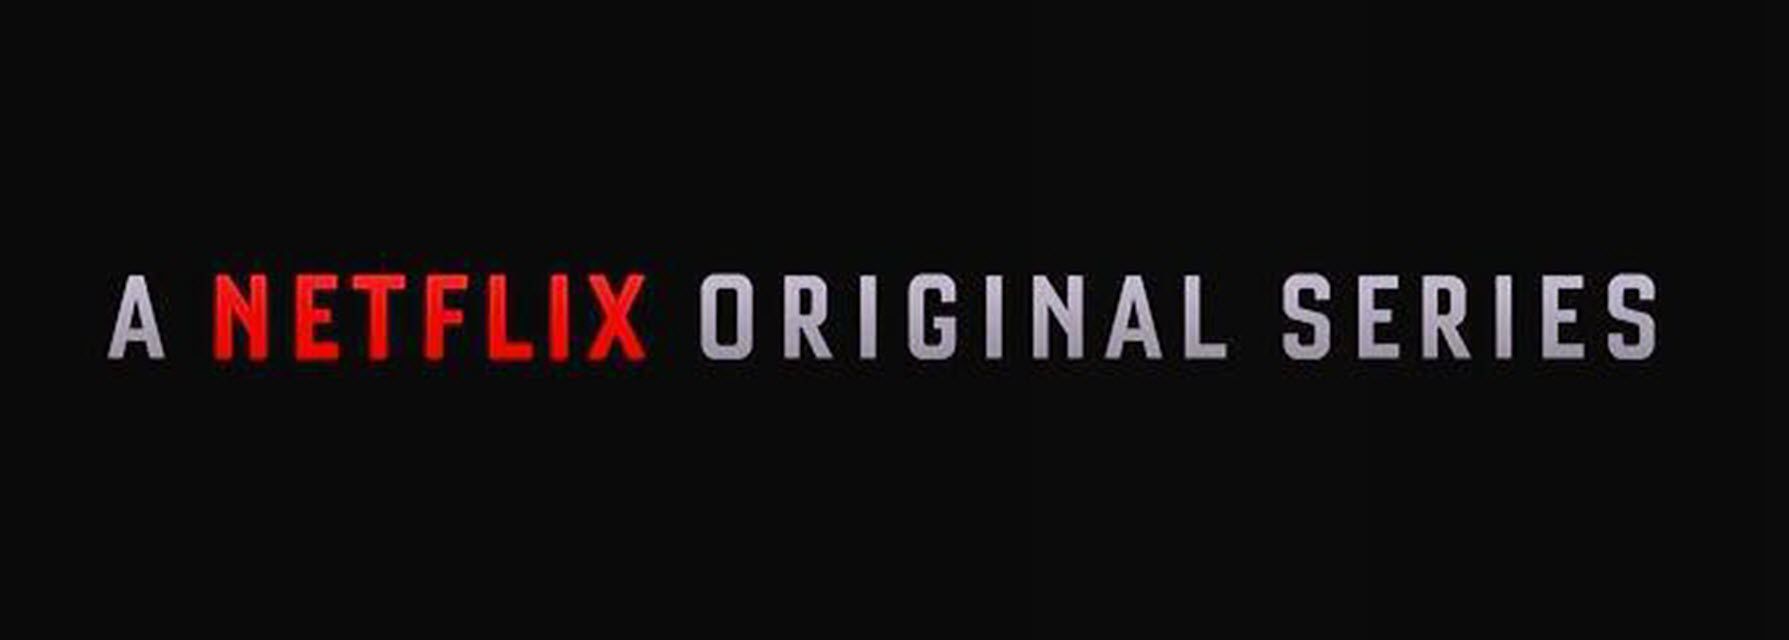 Het Netflix Original Series-logo